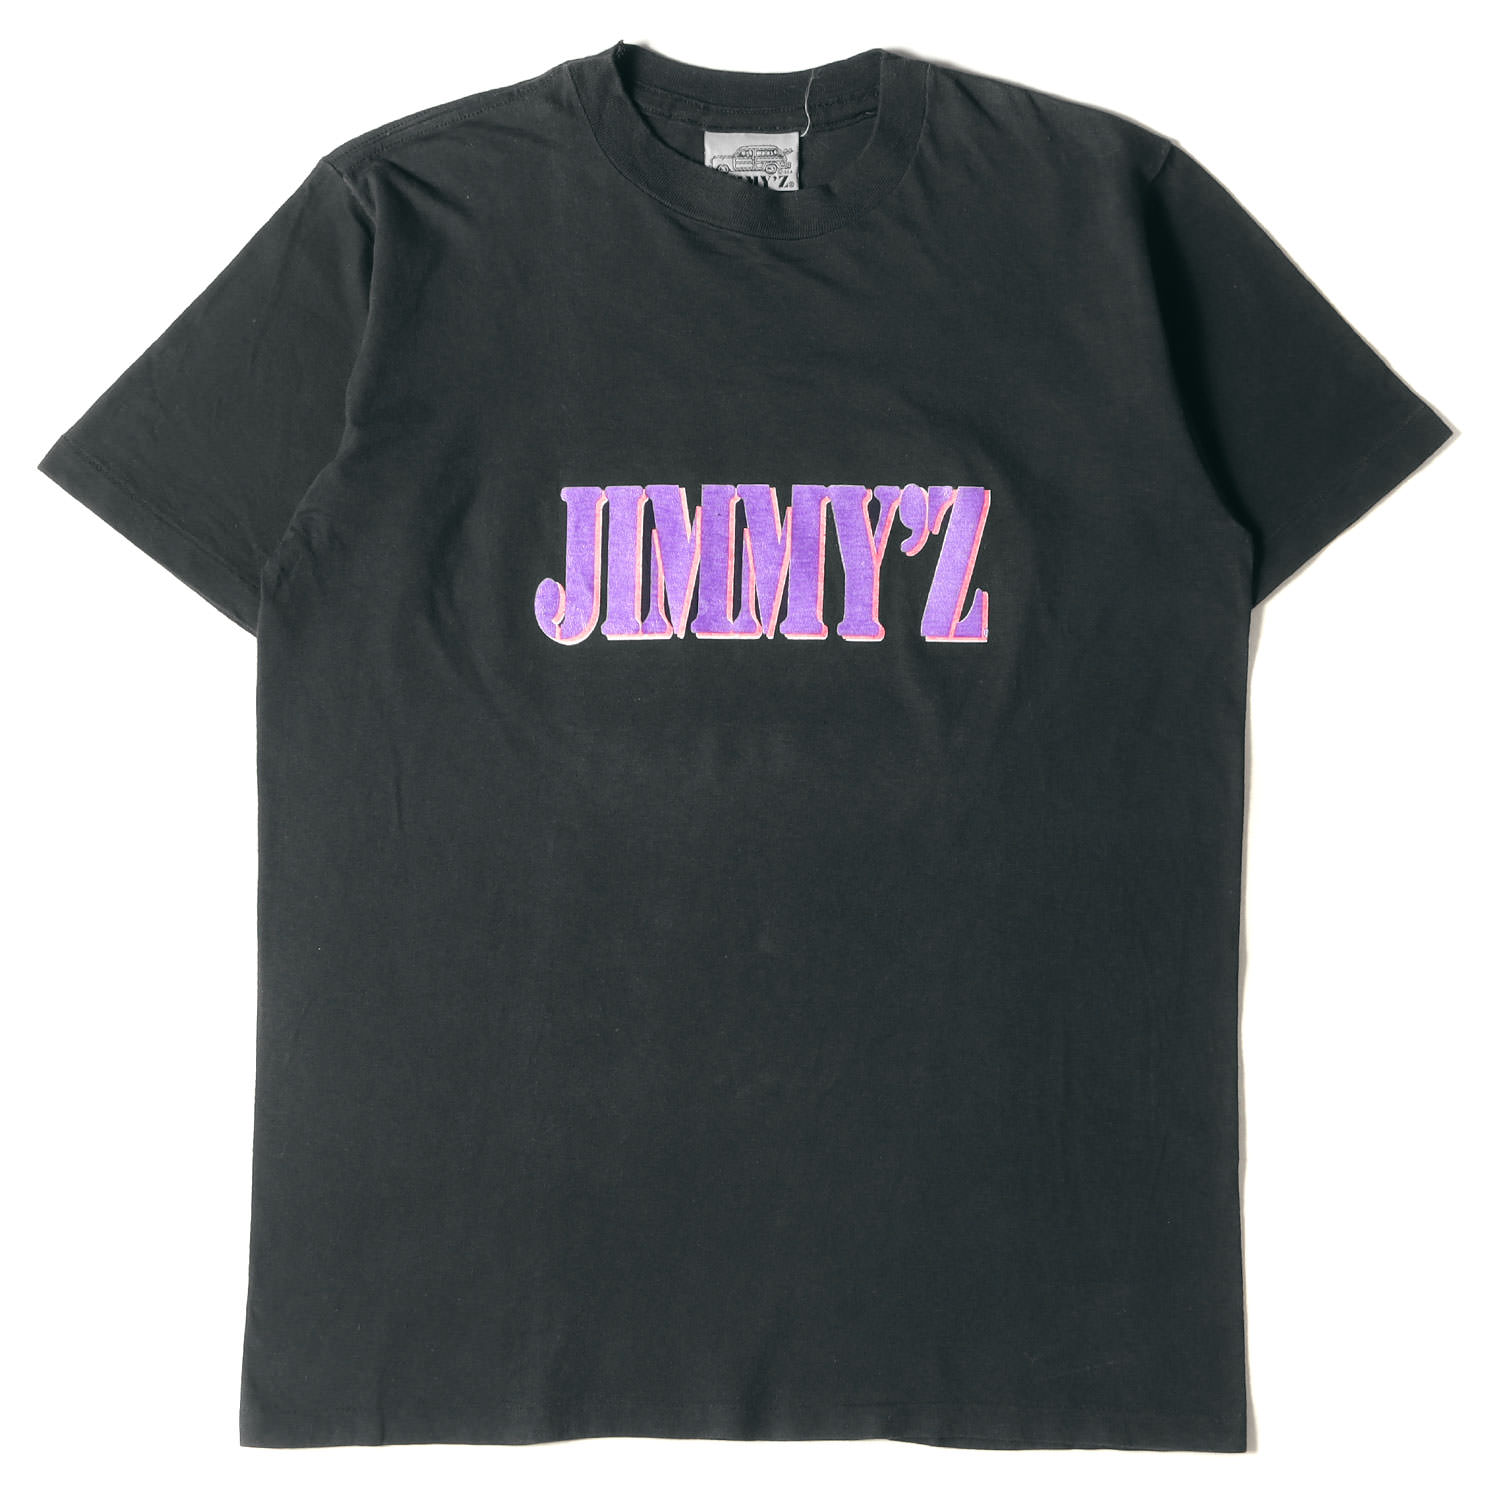 JIMMYZ ジミーズ Tシャツ サイズ:m 90s ブランドロゴ クルーネック Tシャツ カナダ製 ブラック 黒 トップス カットソー 半袖 両面プリント 